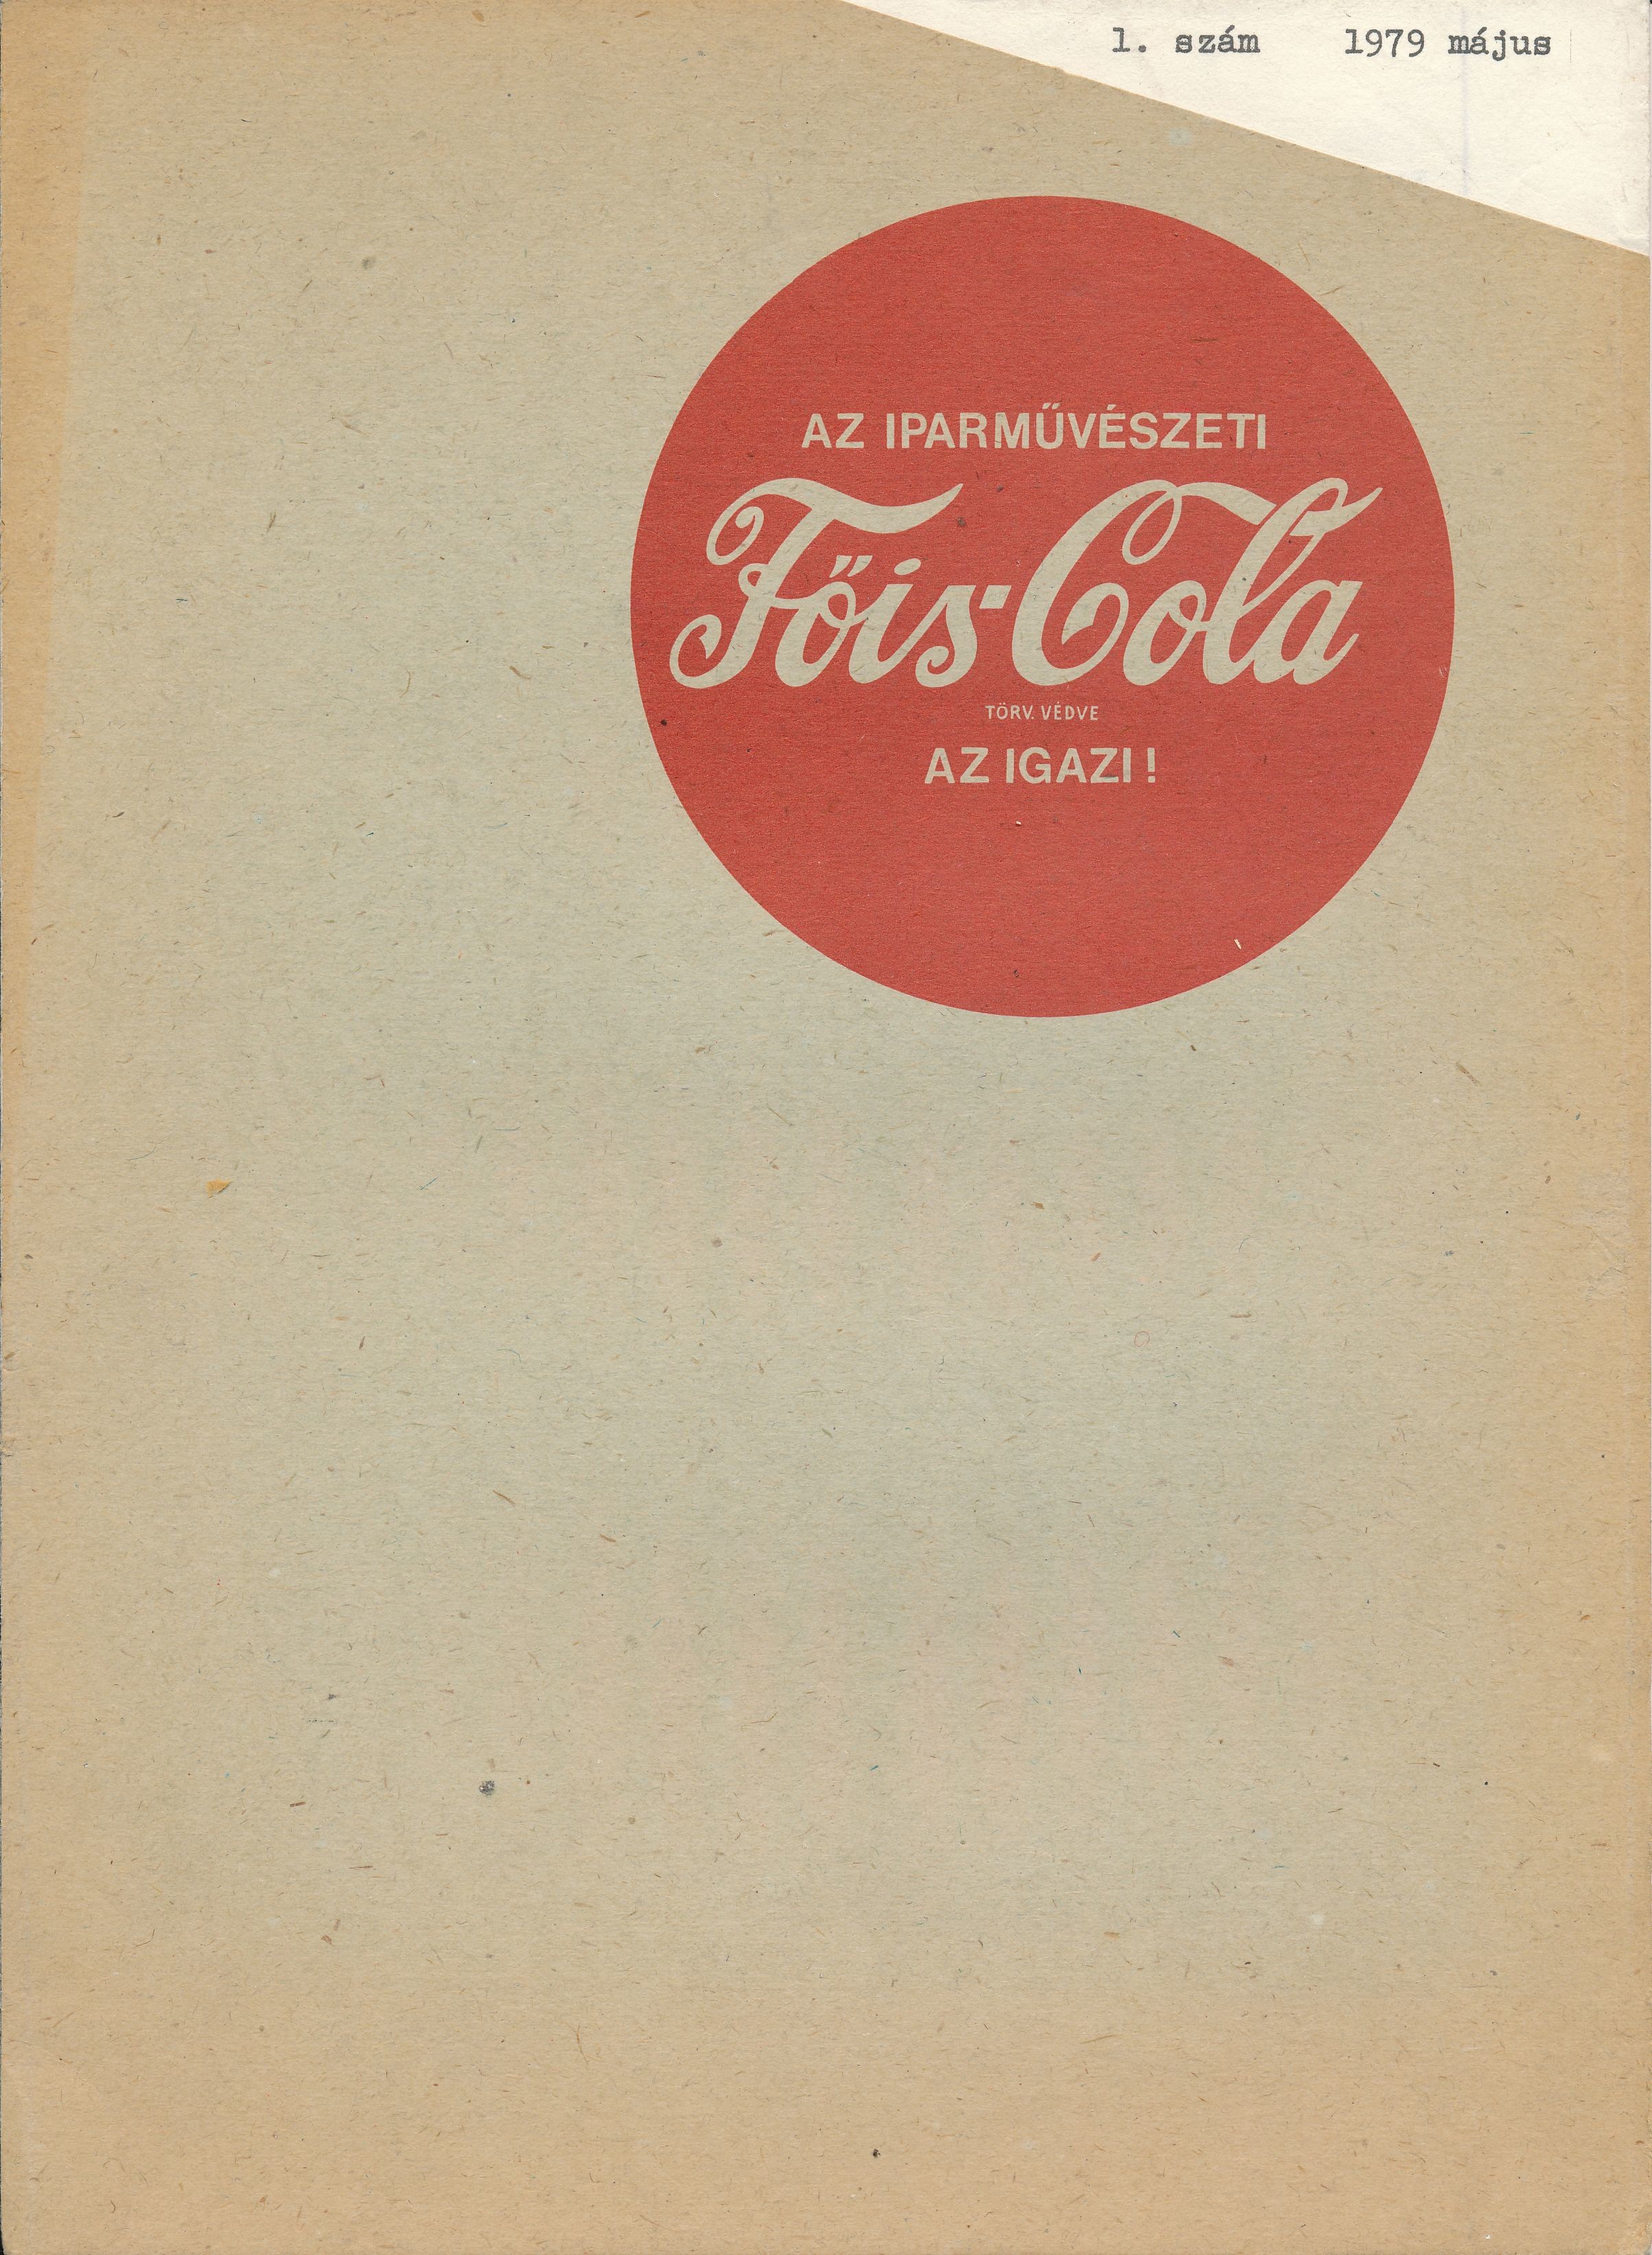 Az Iparművészeti Főis-Cola törv. védve az igazi (Design DigiTár – Iparművészeti archívum CC BY-NC-SA)